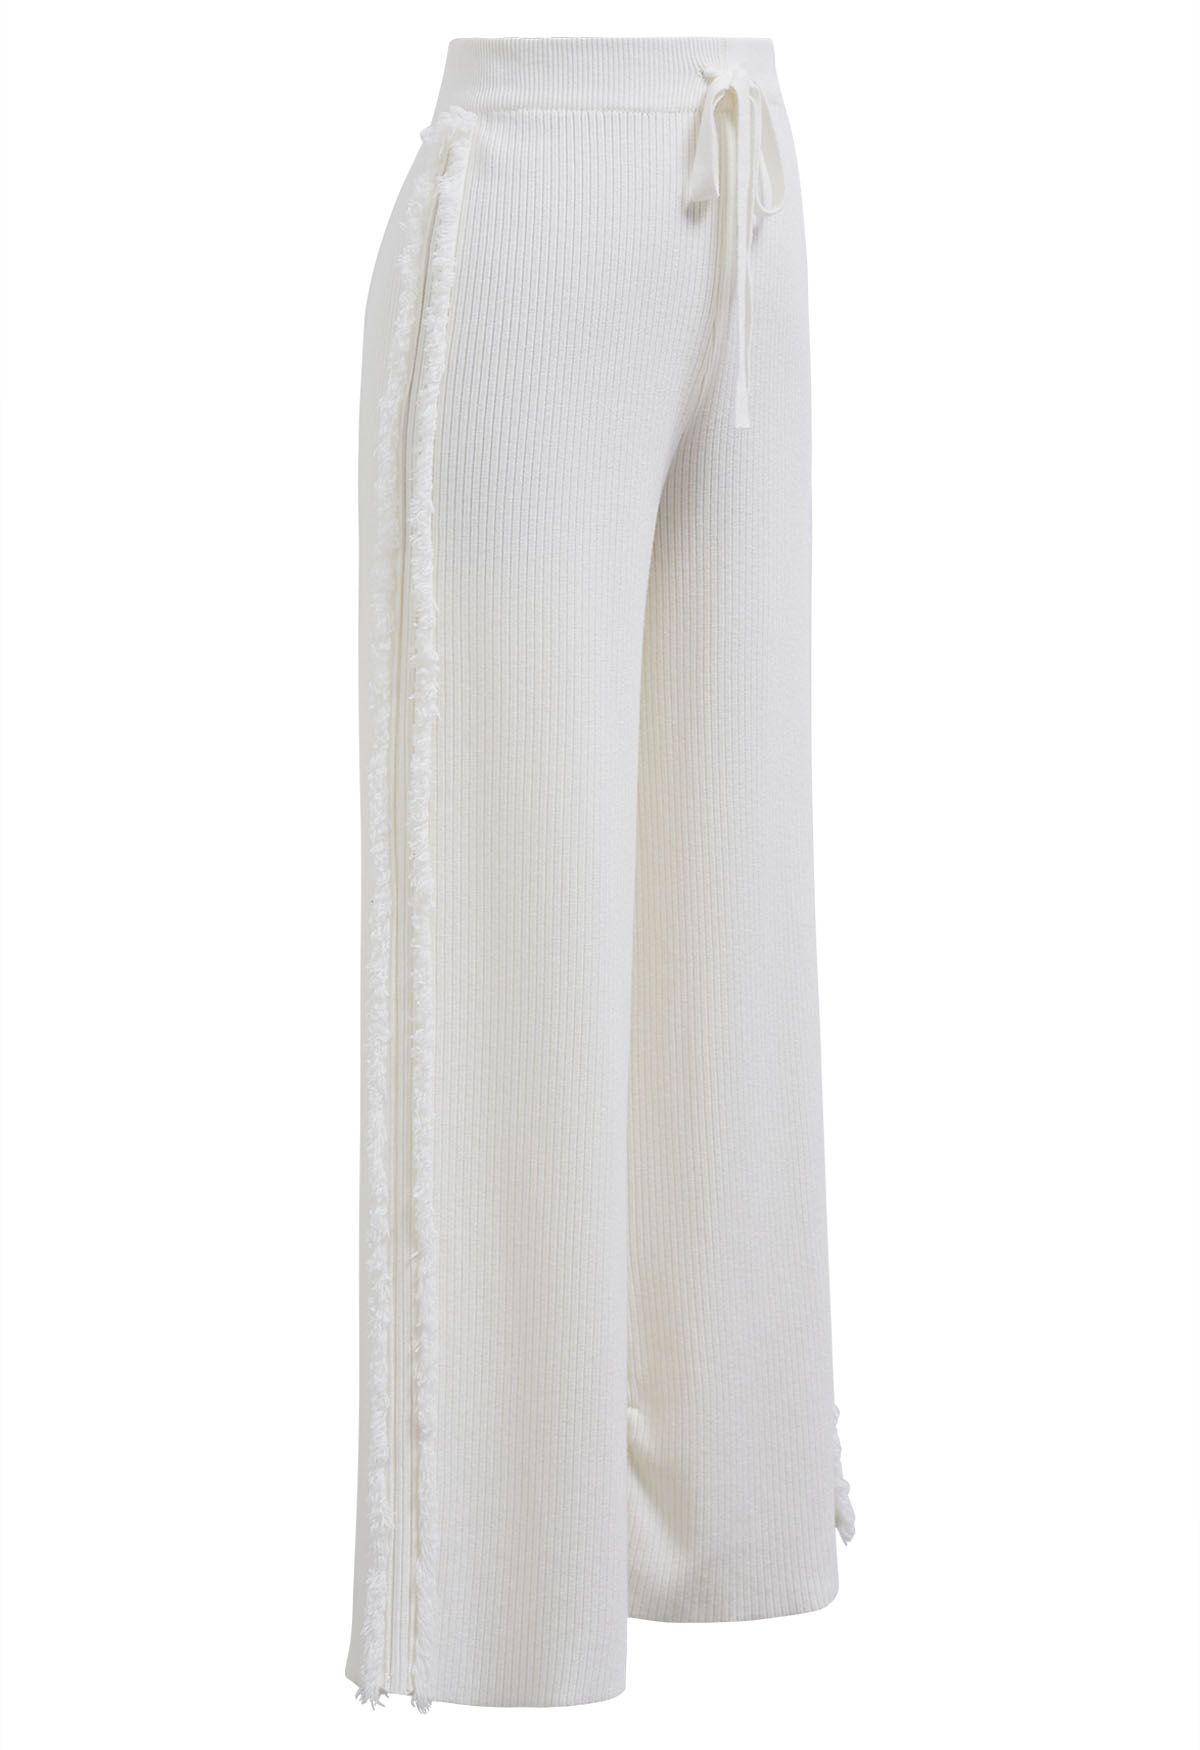 Strickhose mit geradem Bein und seitlichem Quastenbesatz in Weiß